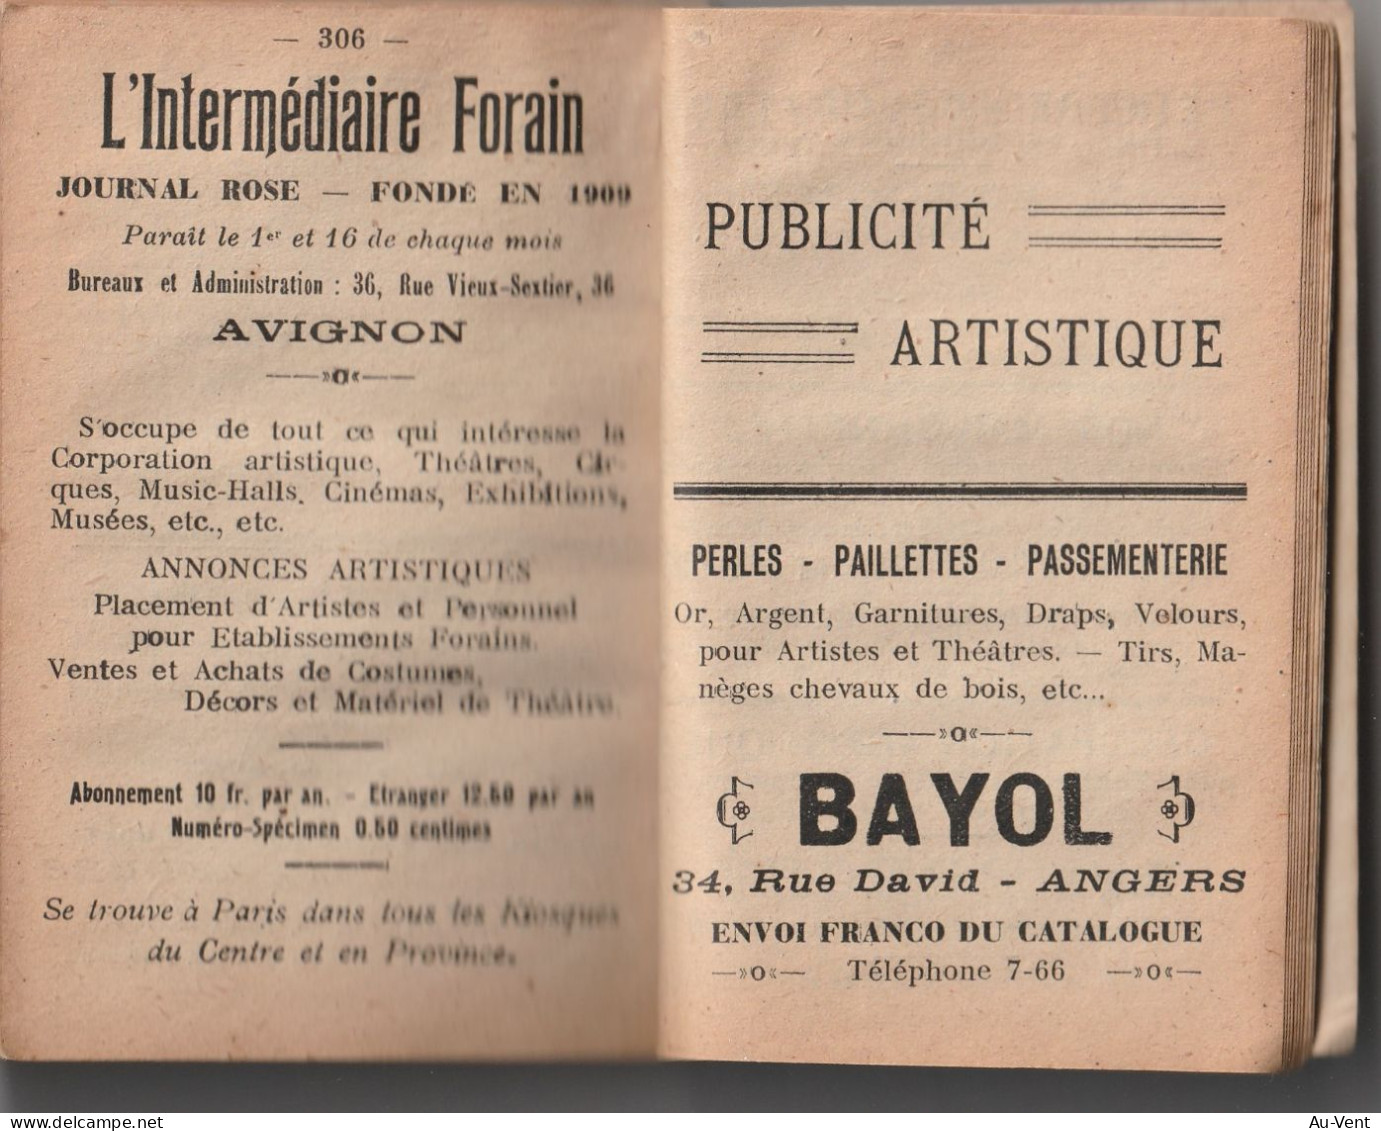 84 GUIDE L'INTERMEDIAIRE DES FORAINS ( Foire En France 1921)editions Teyssier Avignon - Montpellier